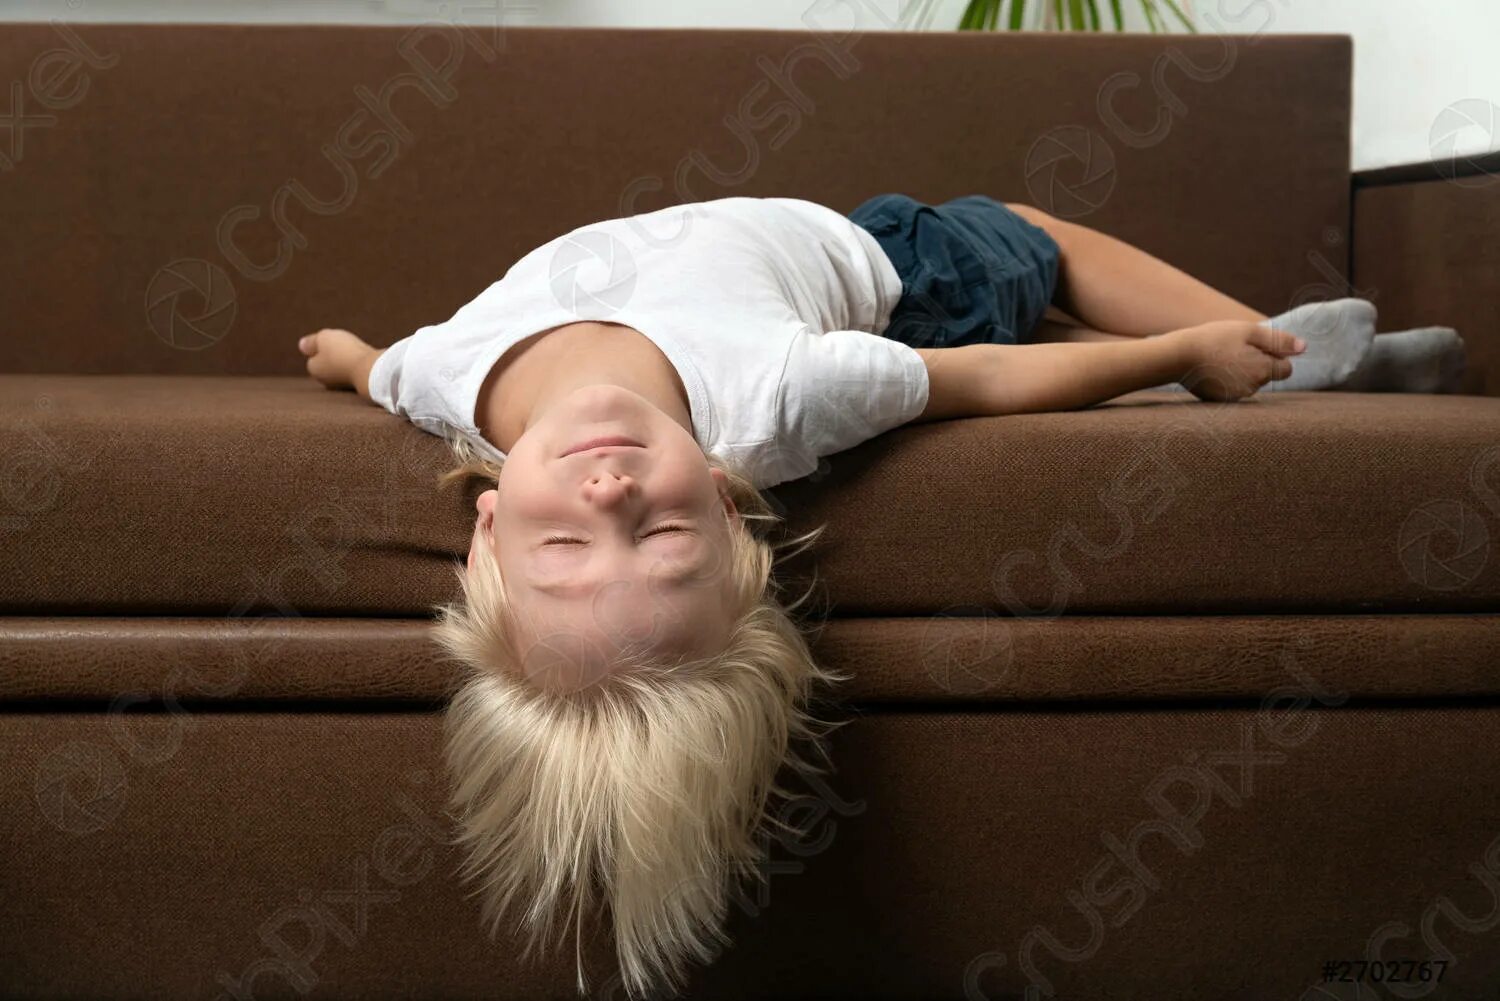 Мальчик устала. Уставший ребенок. Голова свисает с кровати. Ребенок лежит на диване.